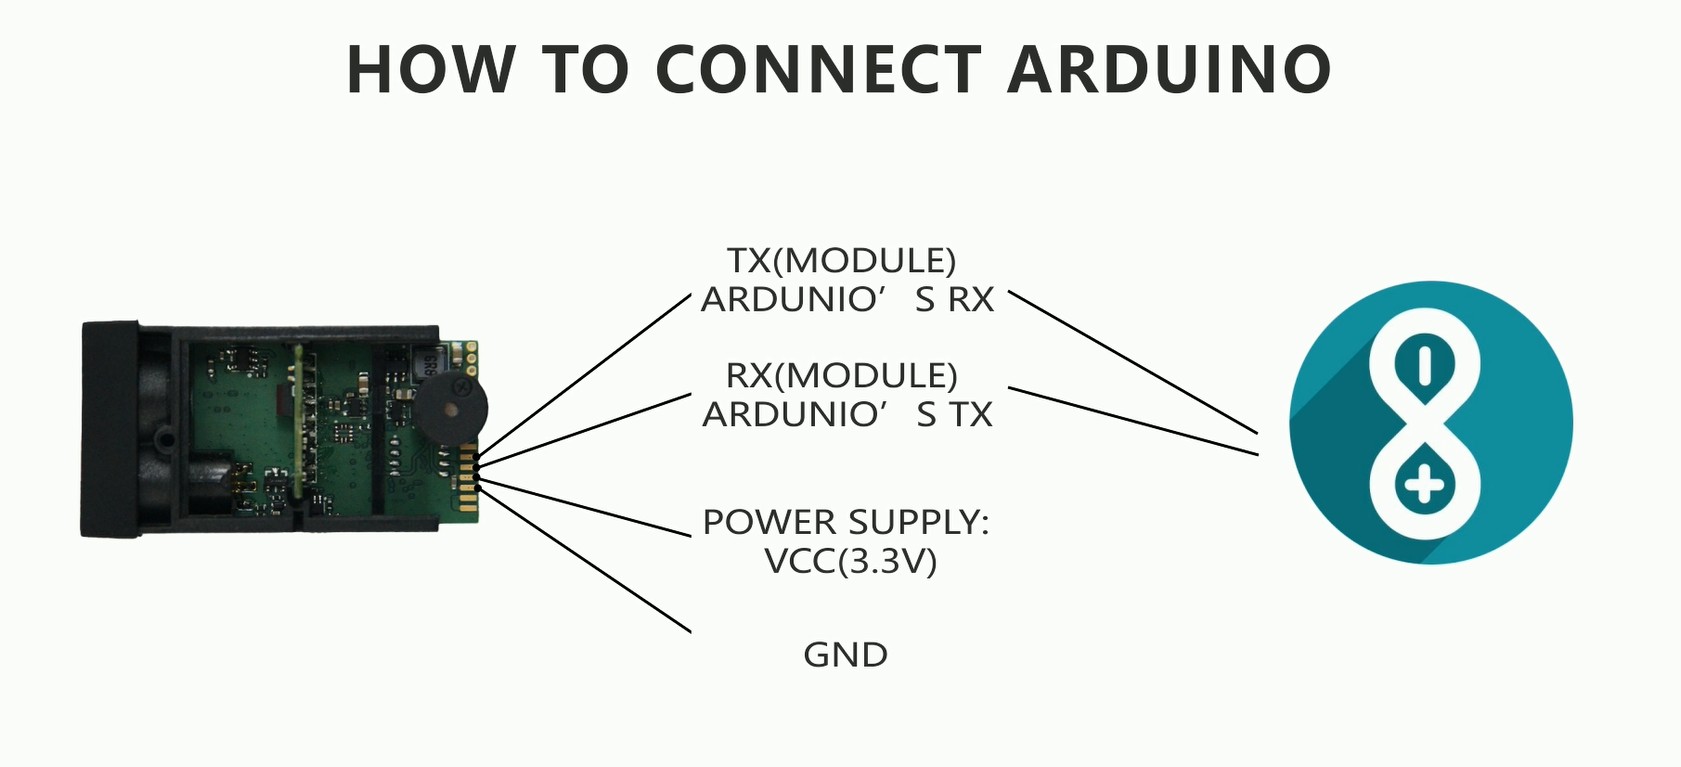 Hoe je Arduino kunt verbinden met 50m USB -afstandsmeting sensoren